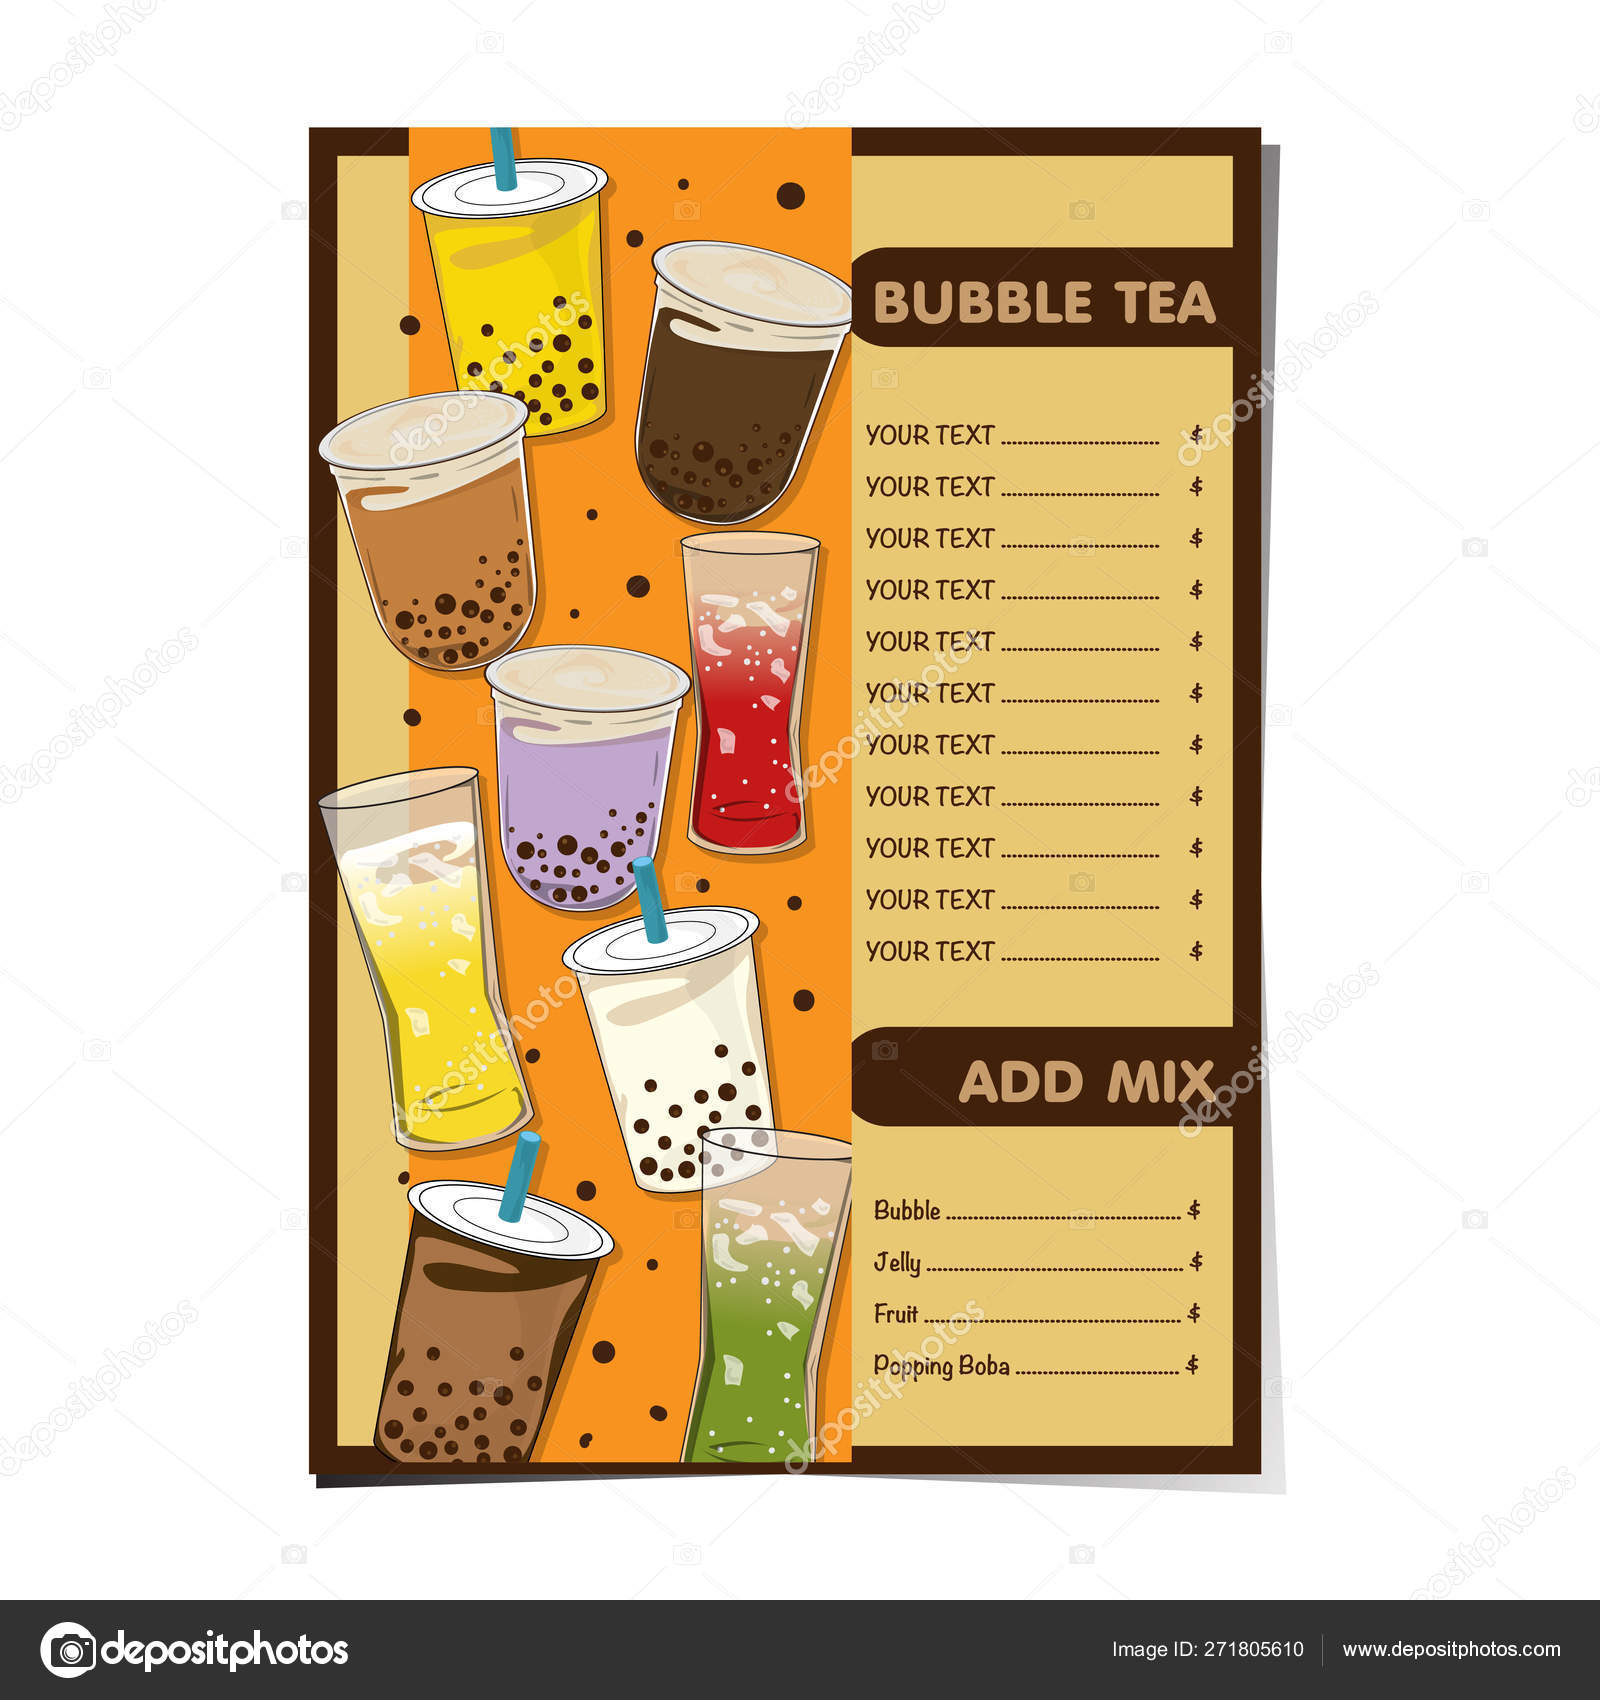 Bạn là một người kinh doanh trà sữa và đang muốn tạo một mẫu đồ họa sáng tạo cho cửa hàng của mình? Với mẫu đồ họa trà sữa của chúng tôi, bạn sẽ dễ dàng tạo ra nhiều sản phẩm sang trọng, tinh tế, thu hút khách hàng đến với cửa hàng của bạn. 